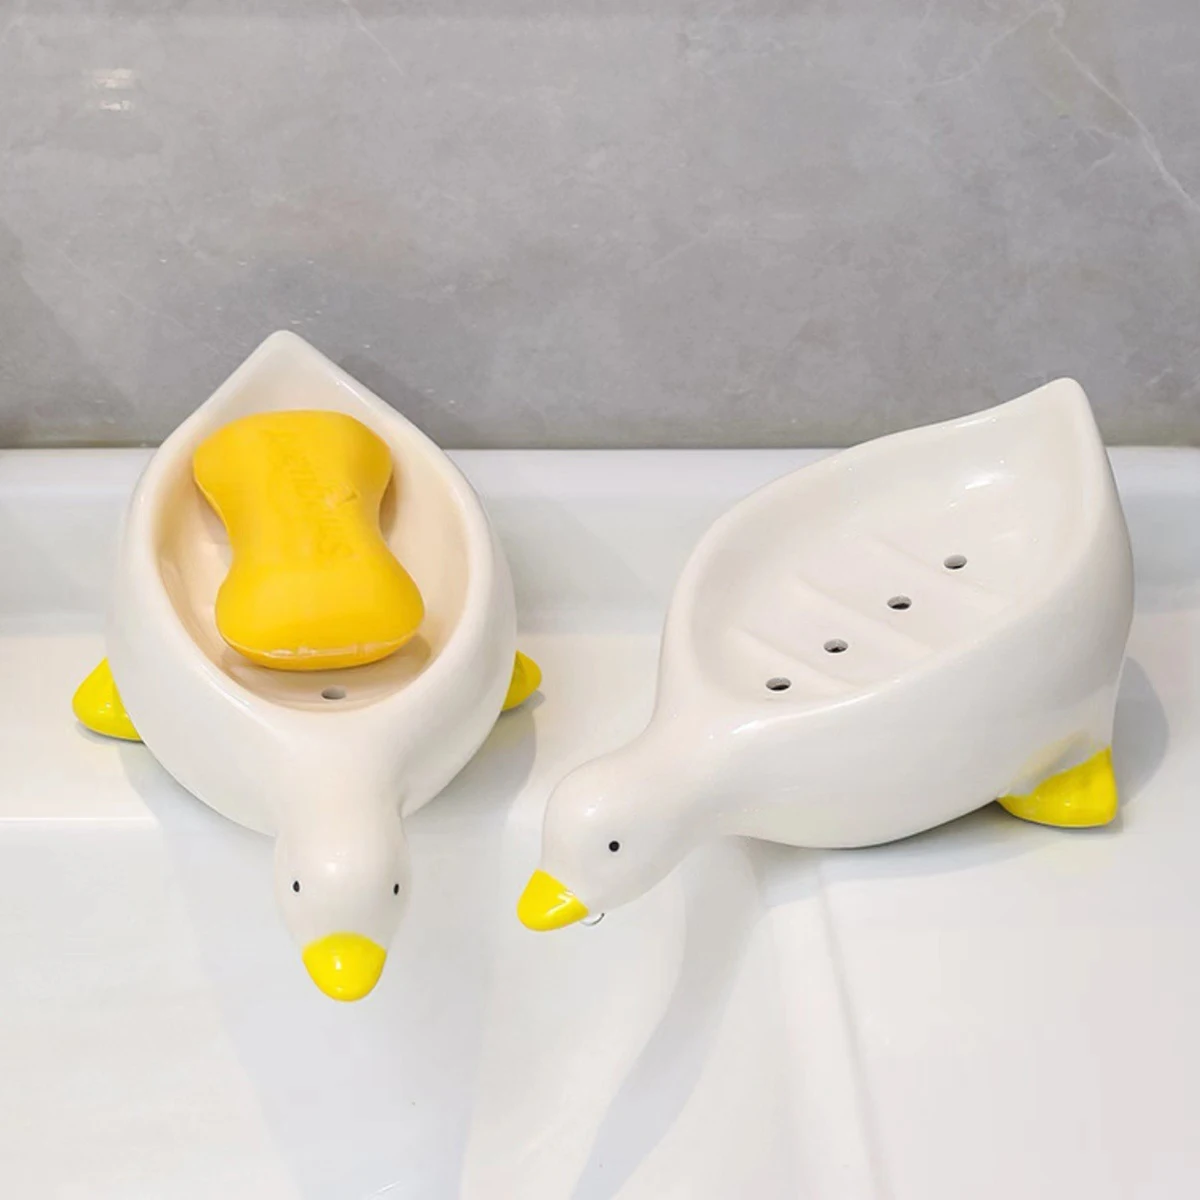 https://ae01.alicdn.com/kf/S7b68b80592e74dcb80cad94b4a941234s/Cute-Duck-Shape-Soap-Dish-Self-Draining-Soap-Holder-Soap-Rack-for-Shower-Bathroom-Home-Tub.jpg